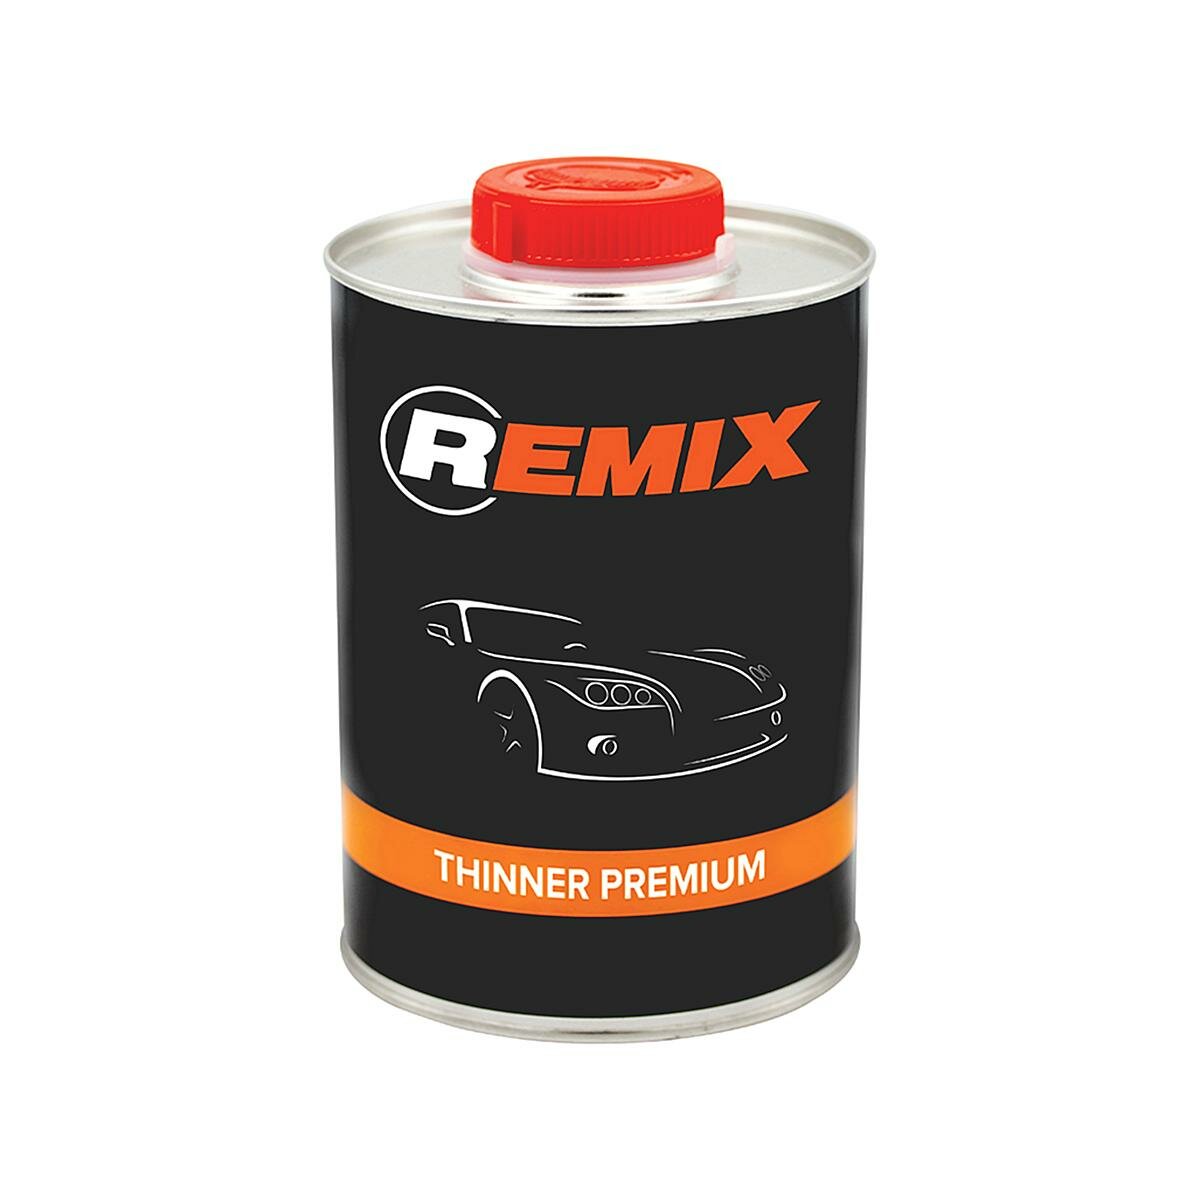 REMIX RM-SOL1 Thinner Premium Разбавитель универсальный 0,9 л.